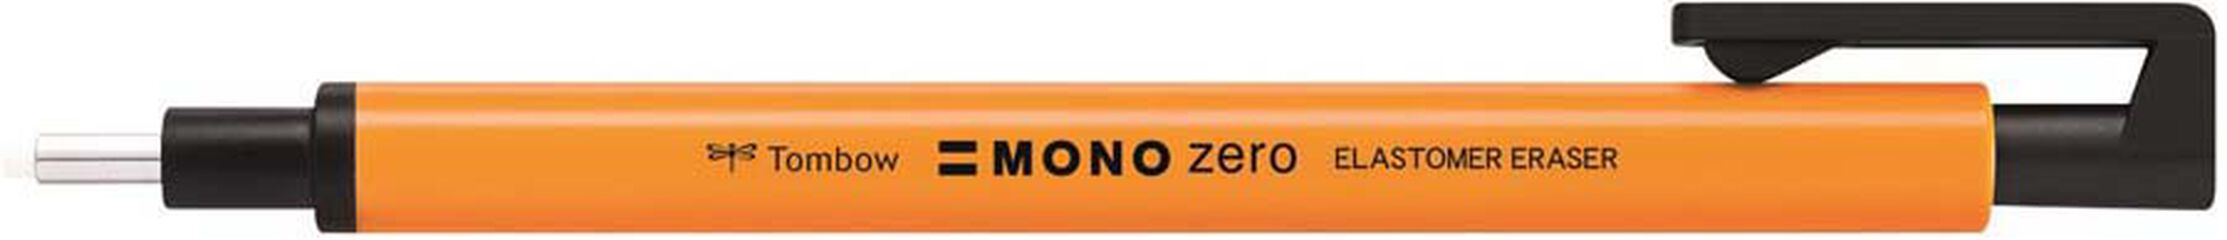 Portagomas Tombow Mono Zero naranja neón